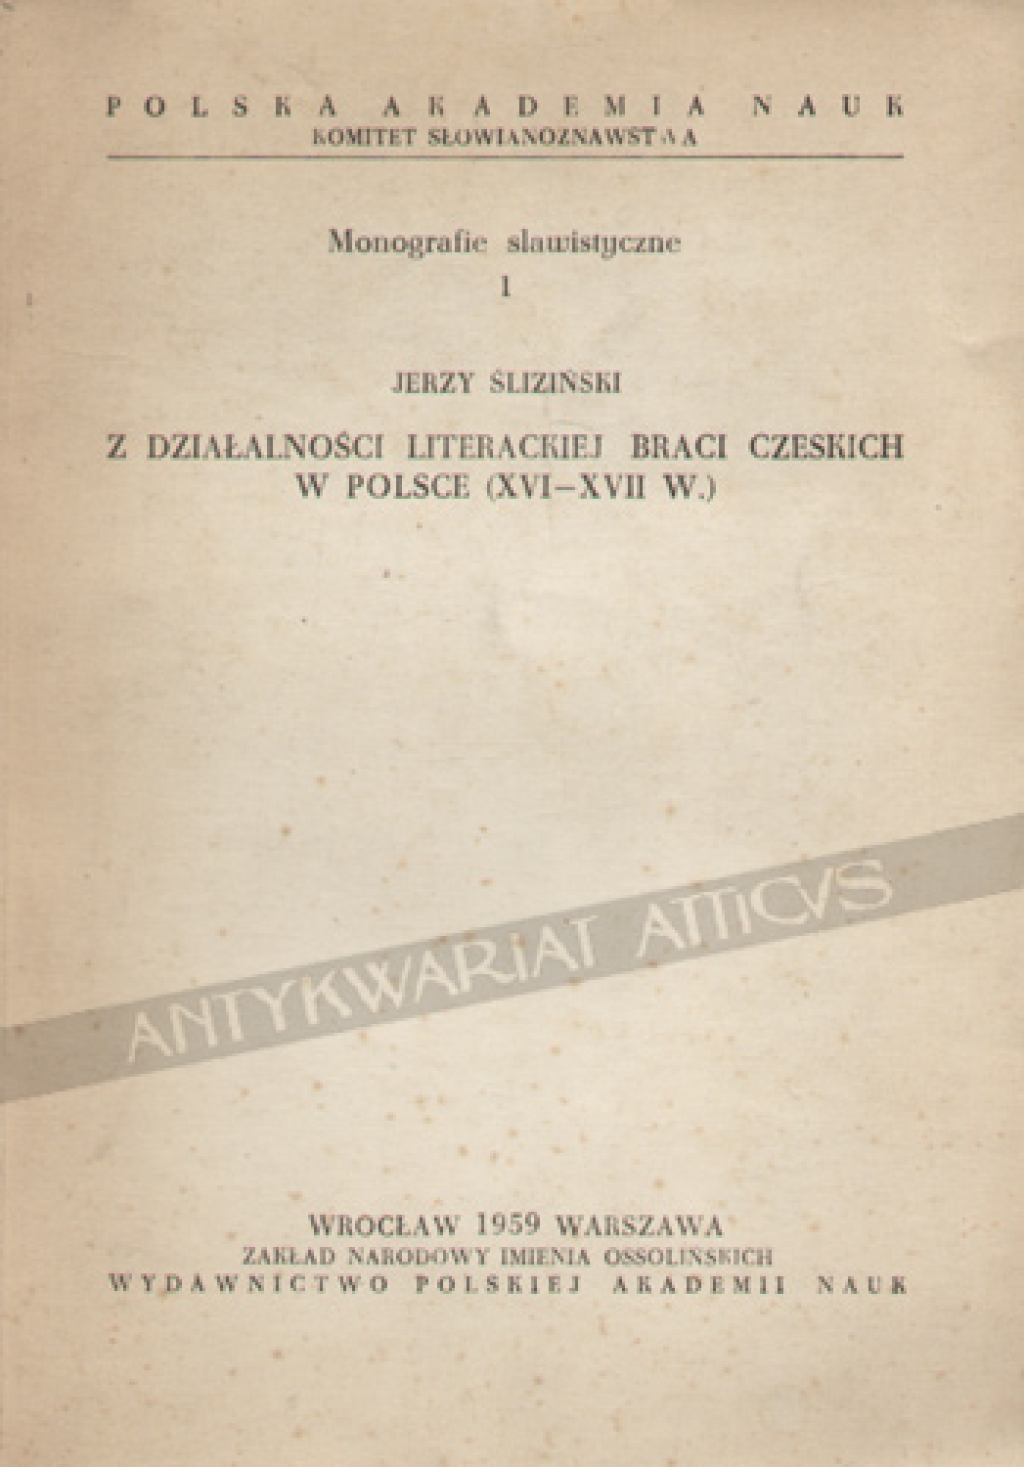 Z działalności literackiej Braci Czeskich w Polsce (XVI-XVII w.)